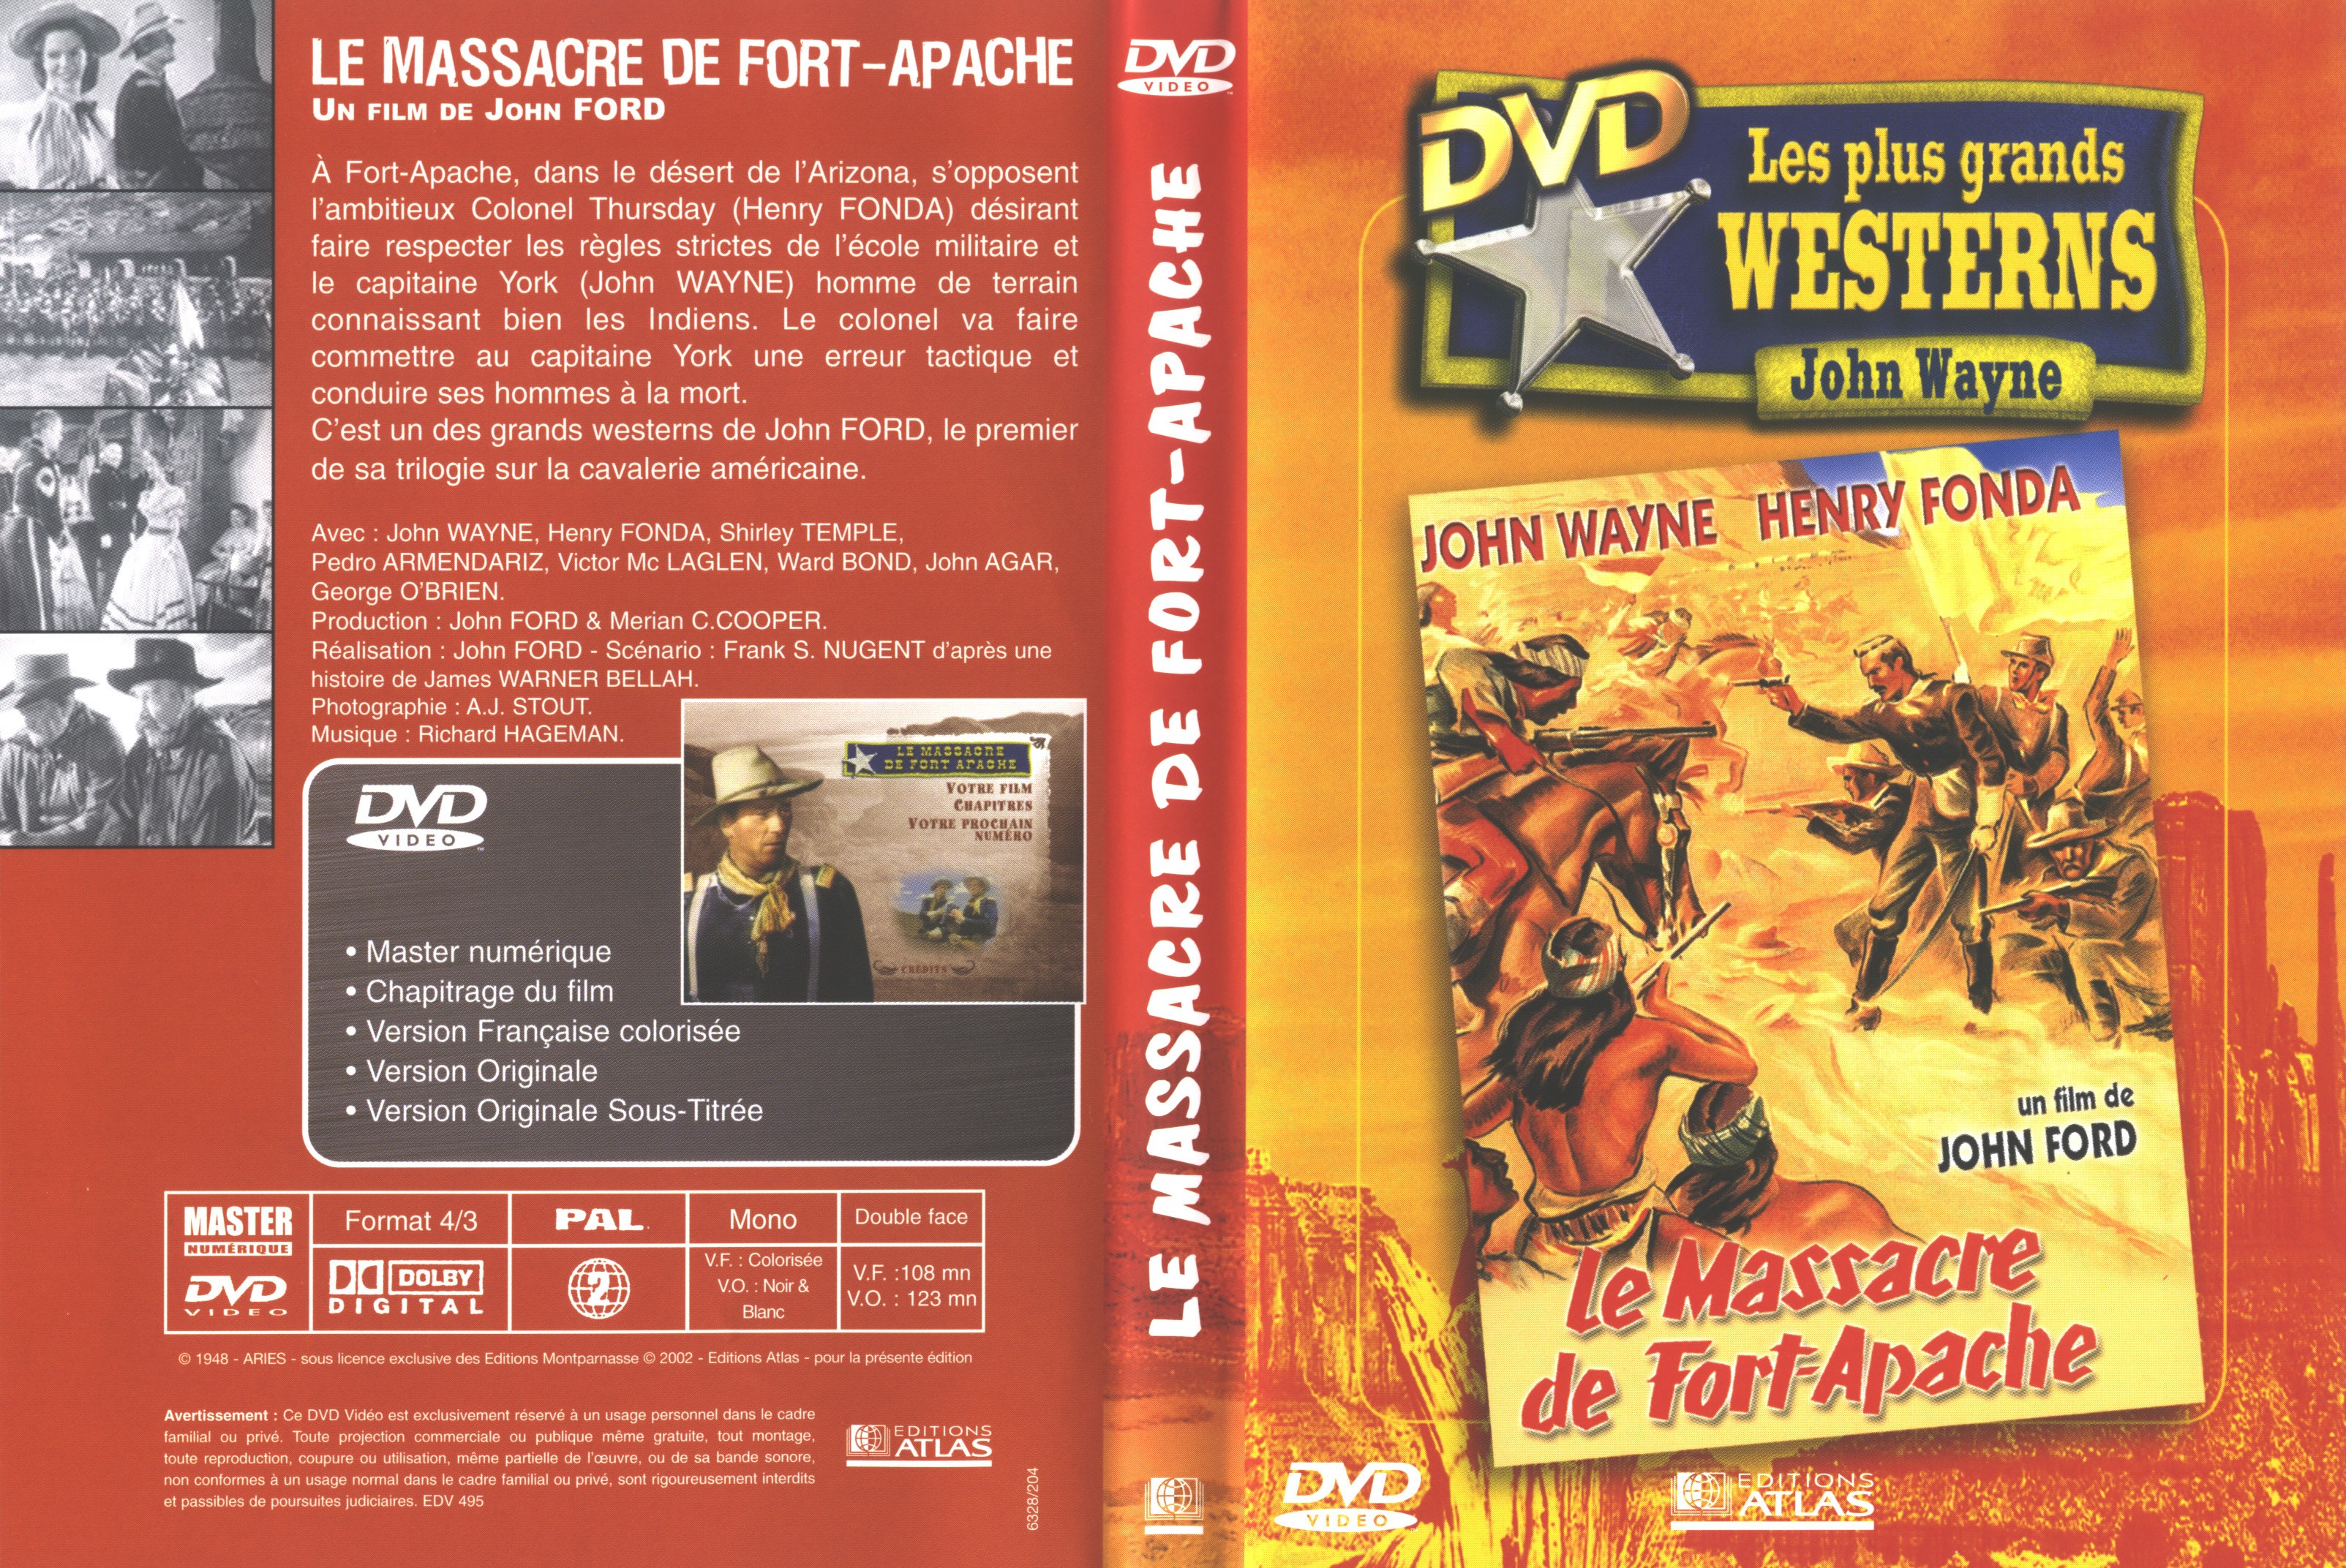 Jaquette DVD Le massacre de fort Apache v2